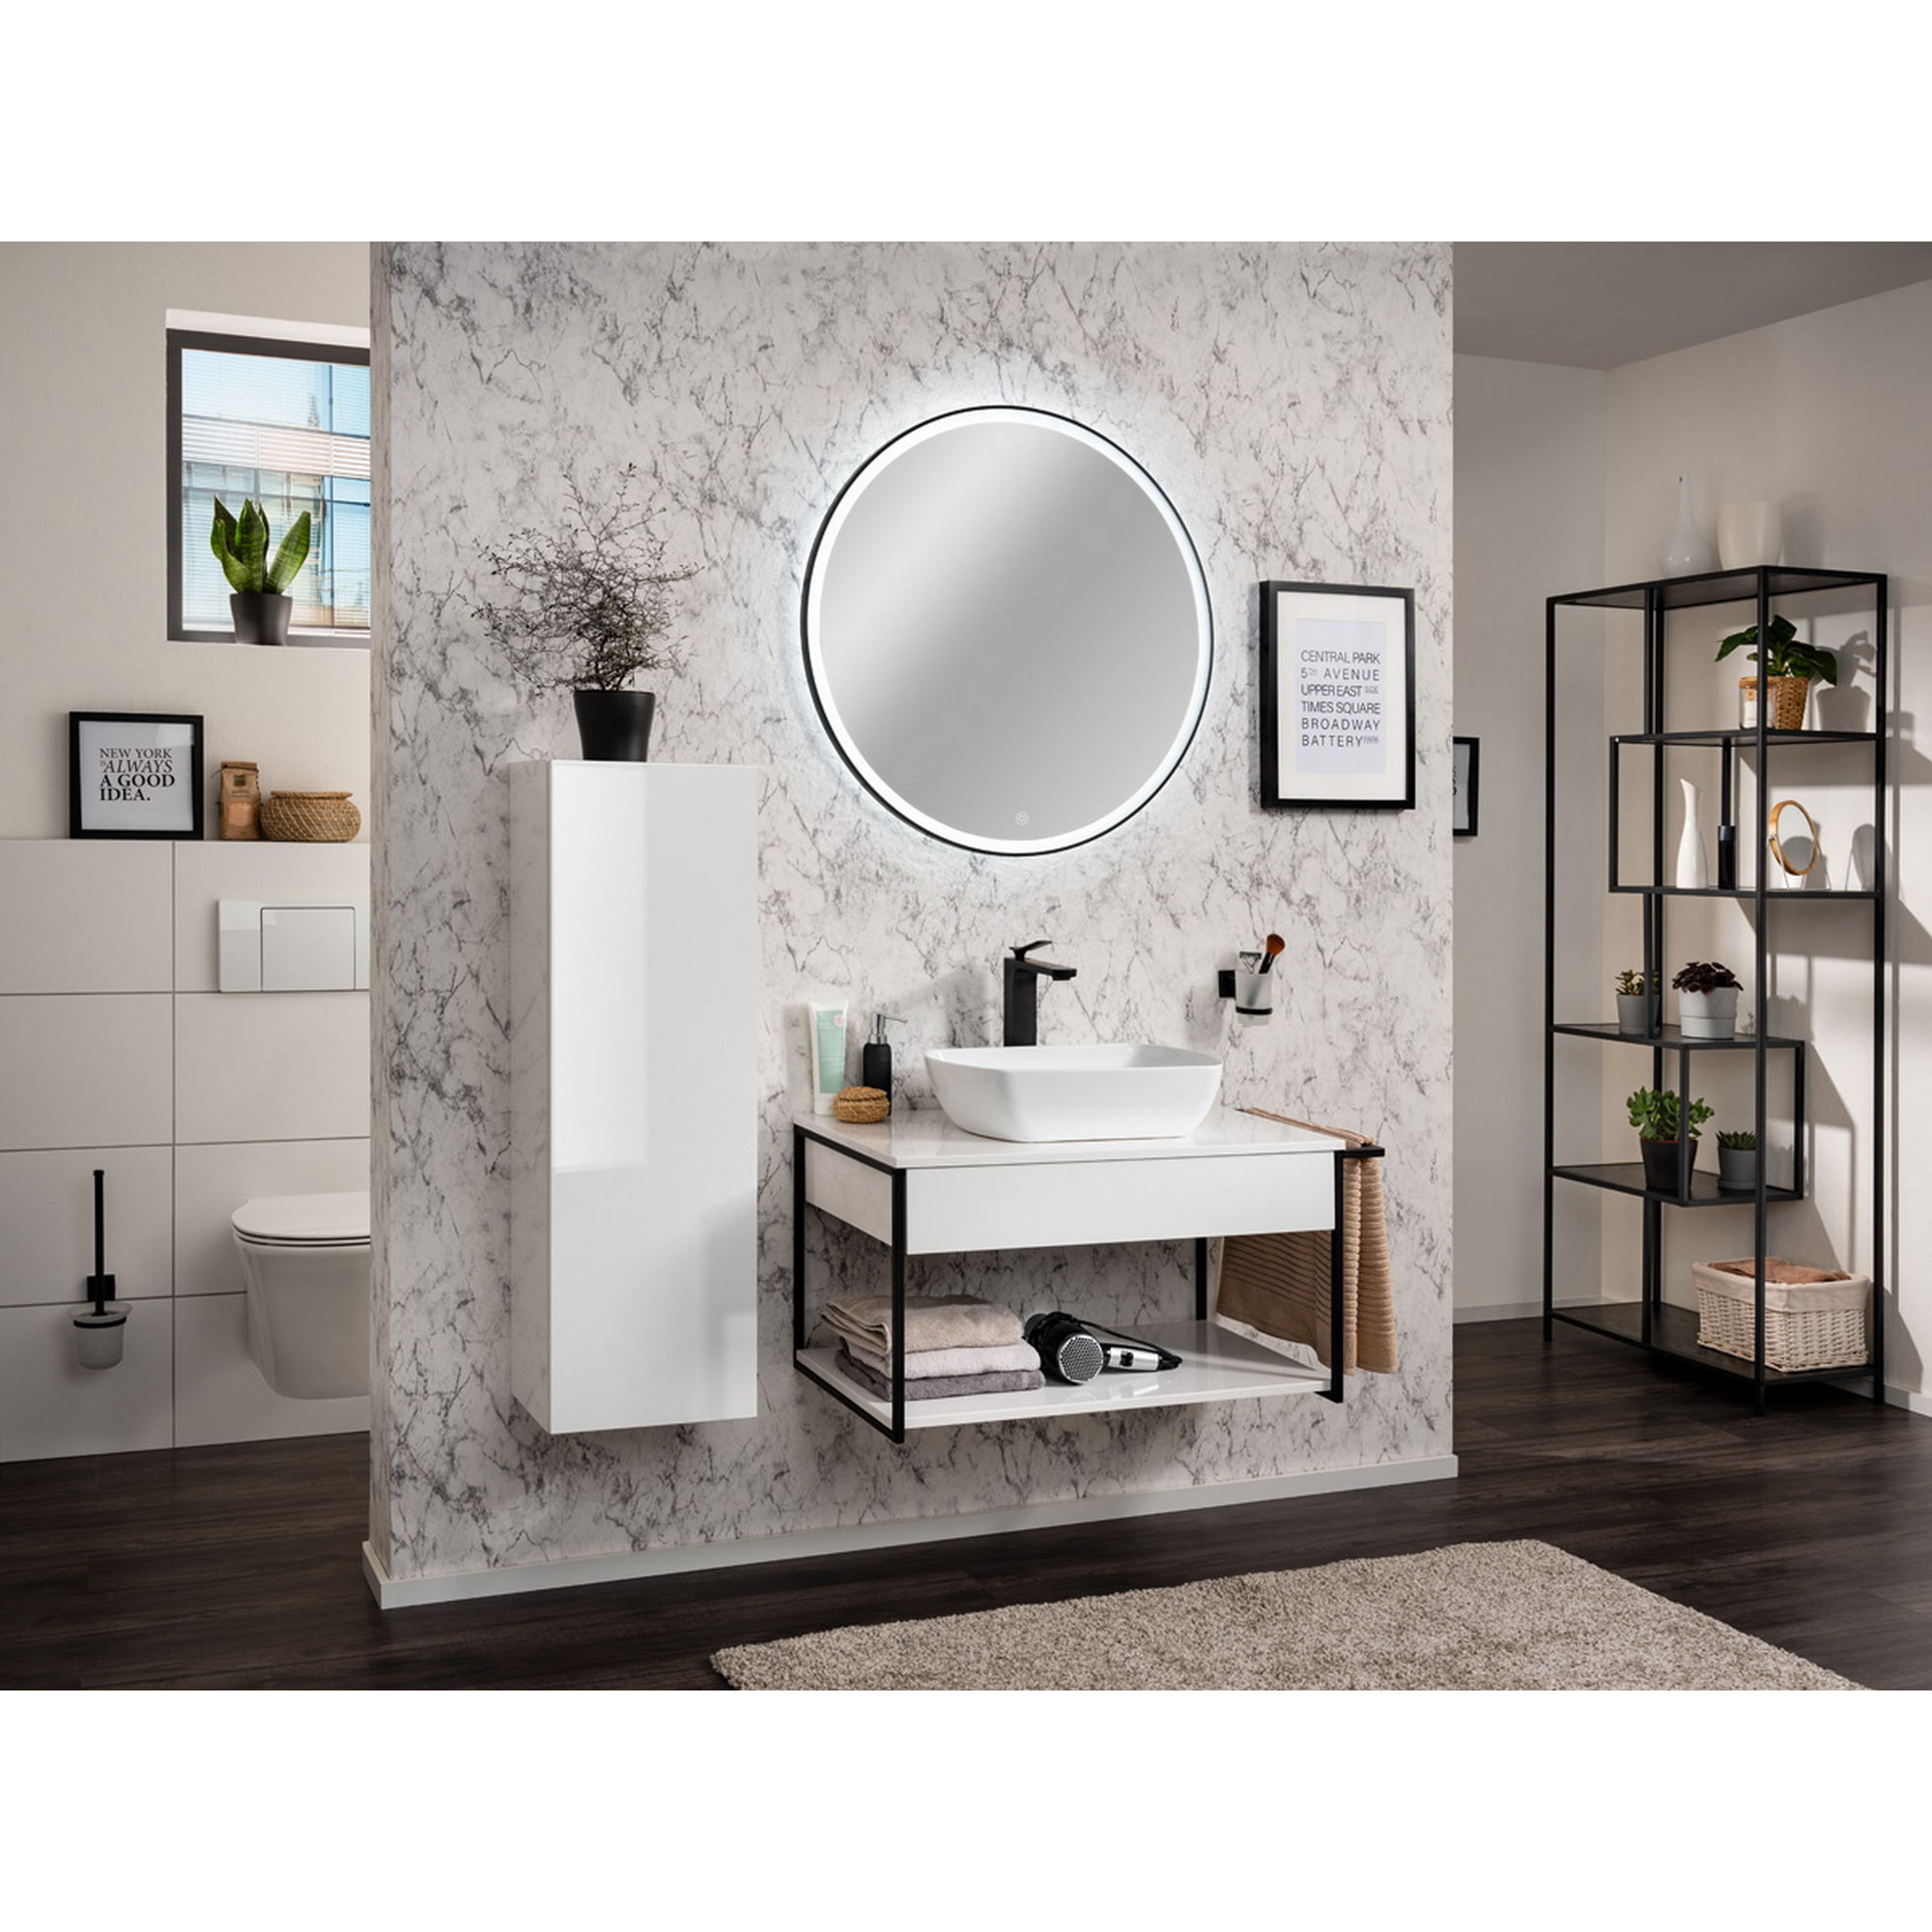 Waschtisch-Unterbau 'New York' weiß/schwarz 88 x 43 x 47,5 cm + product picture